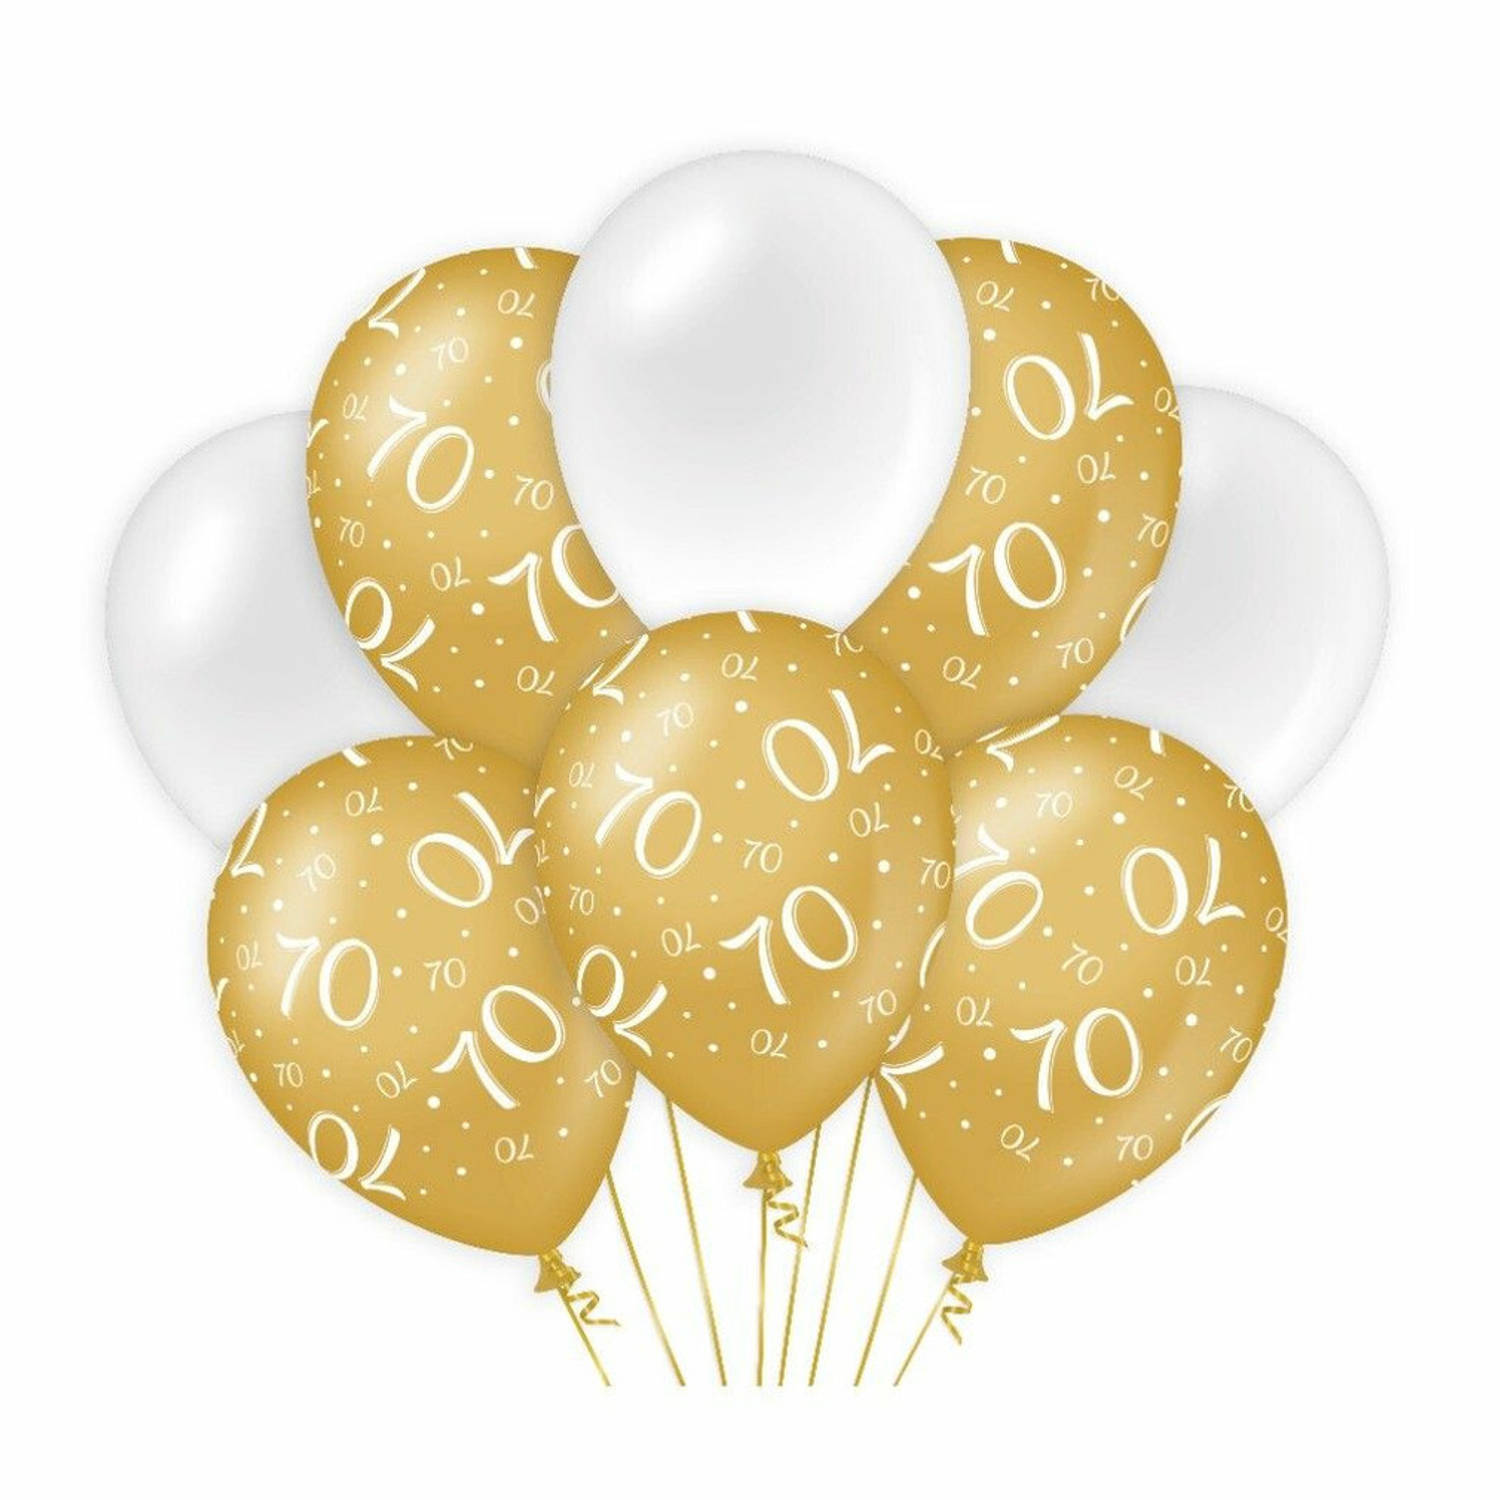 Paperdreams 70 jaar leeftijd thema Ballonnen - 24x - goud/wit - Verjaardag feestartikelen - Ballonnen